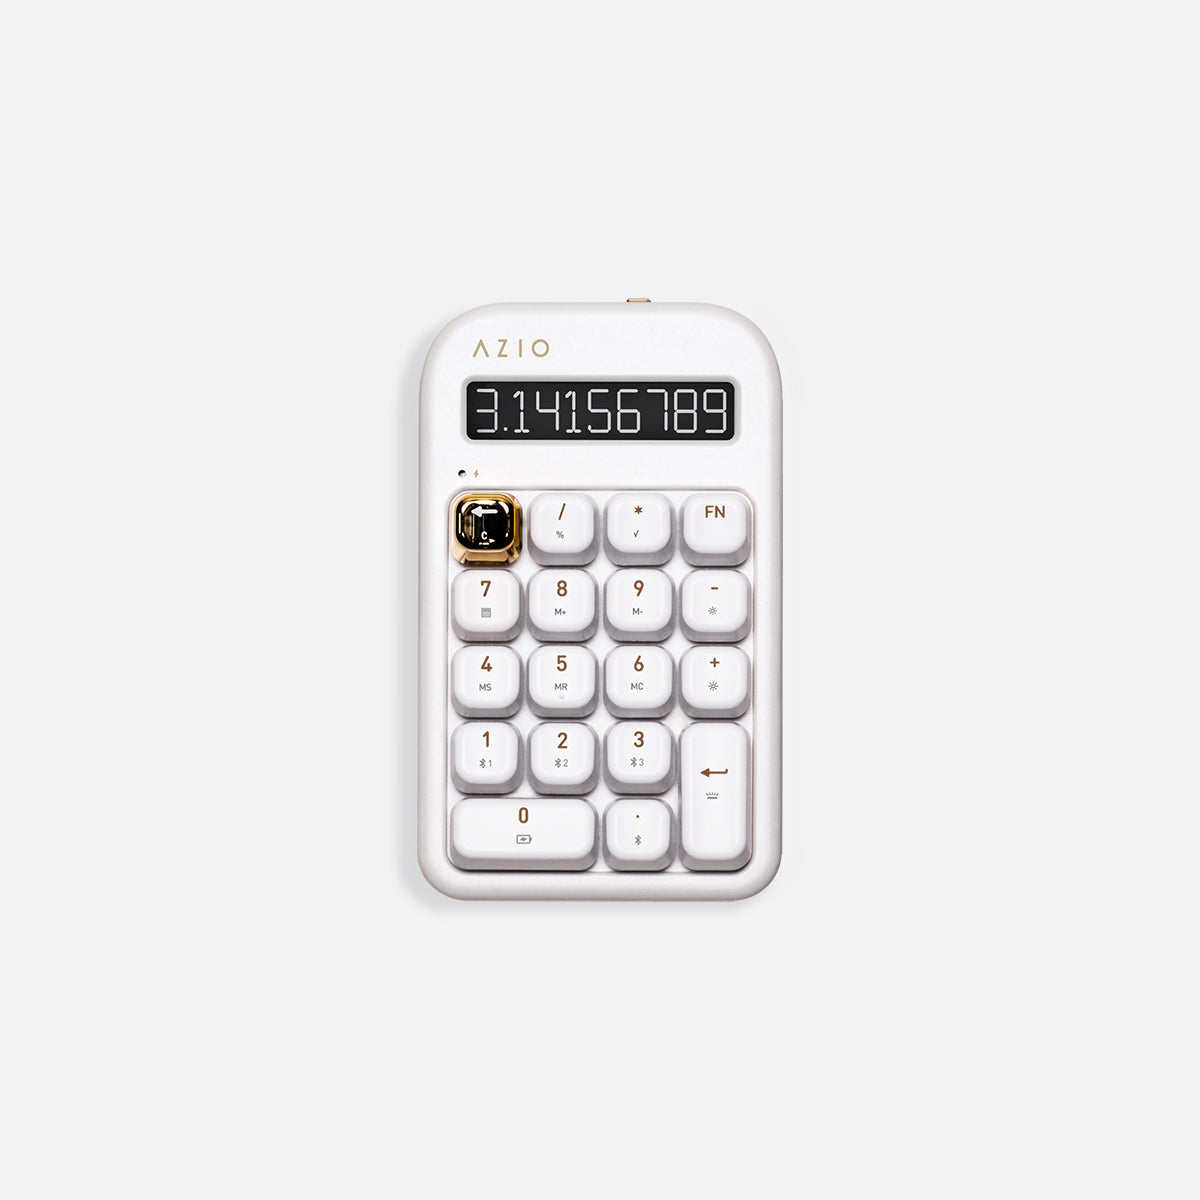 Izo numerická klávesnica / kalkulačka (modrý spínač)